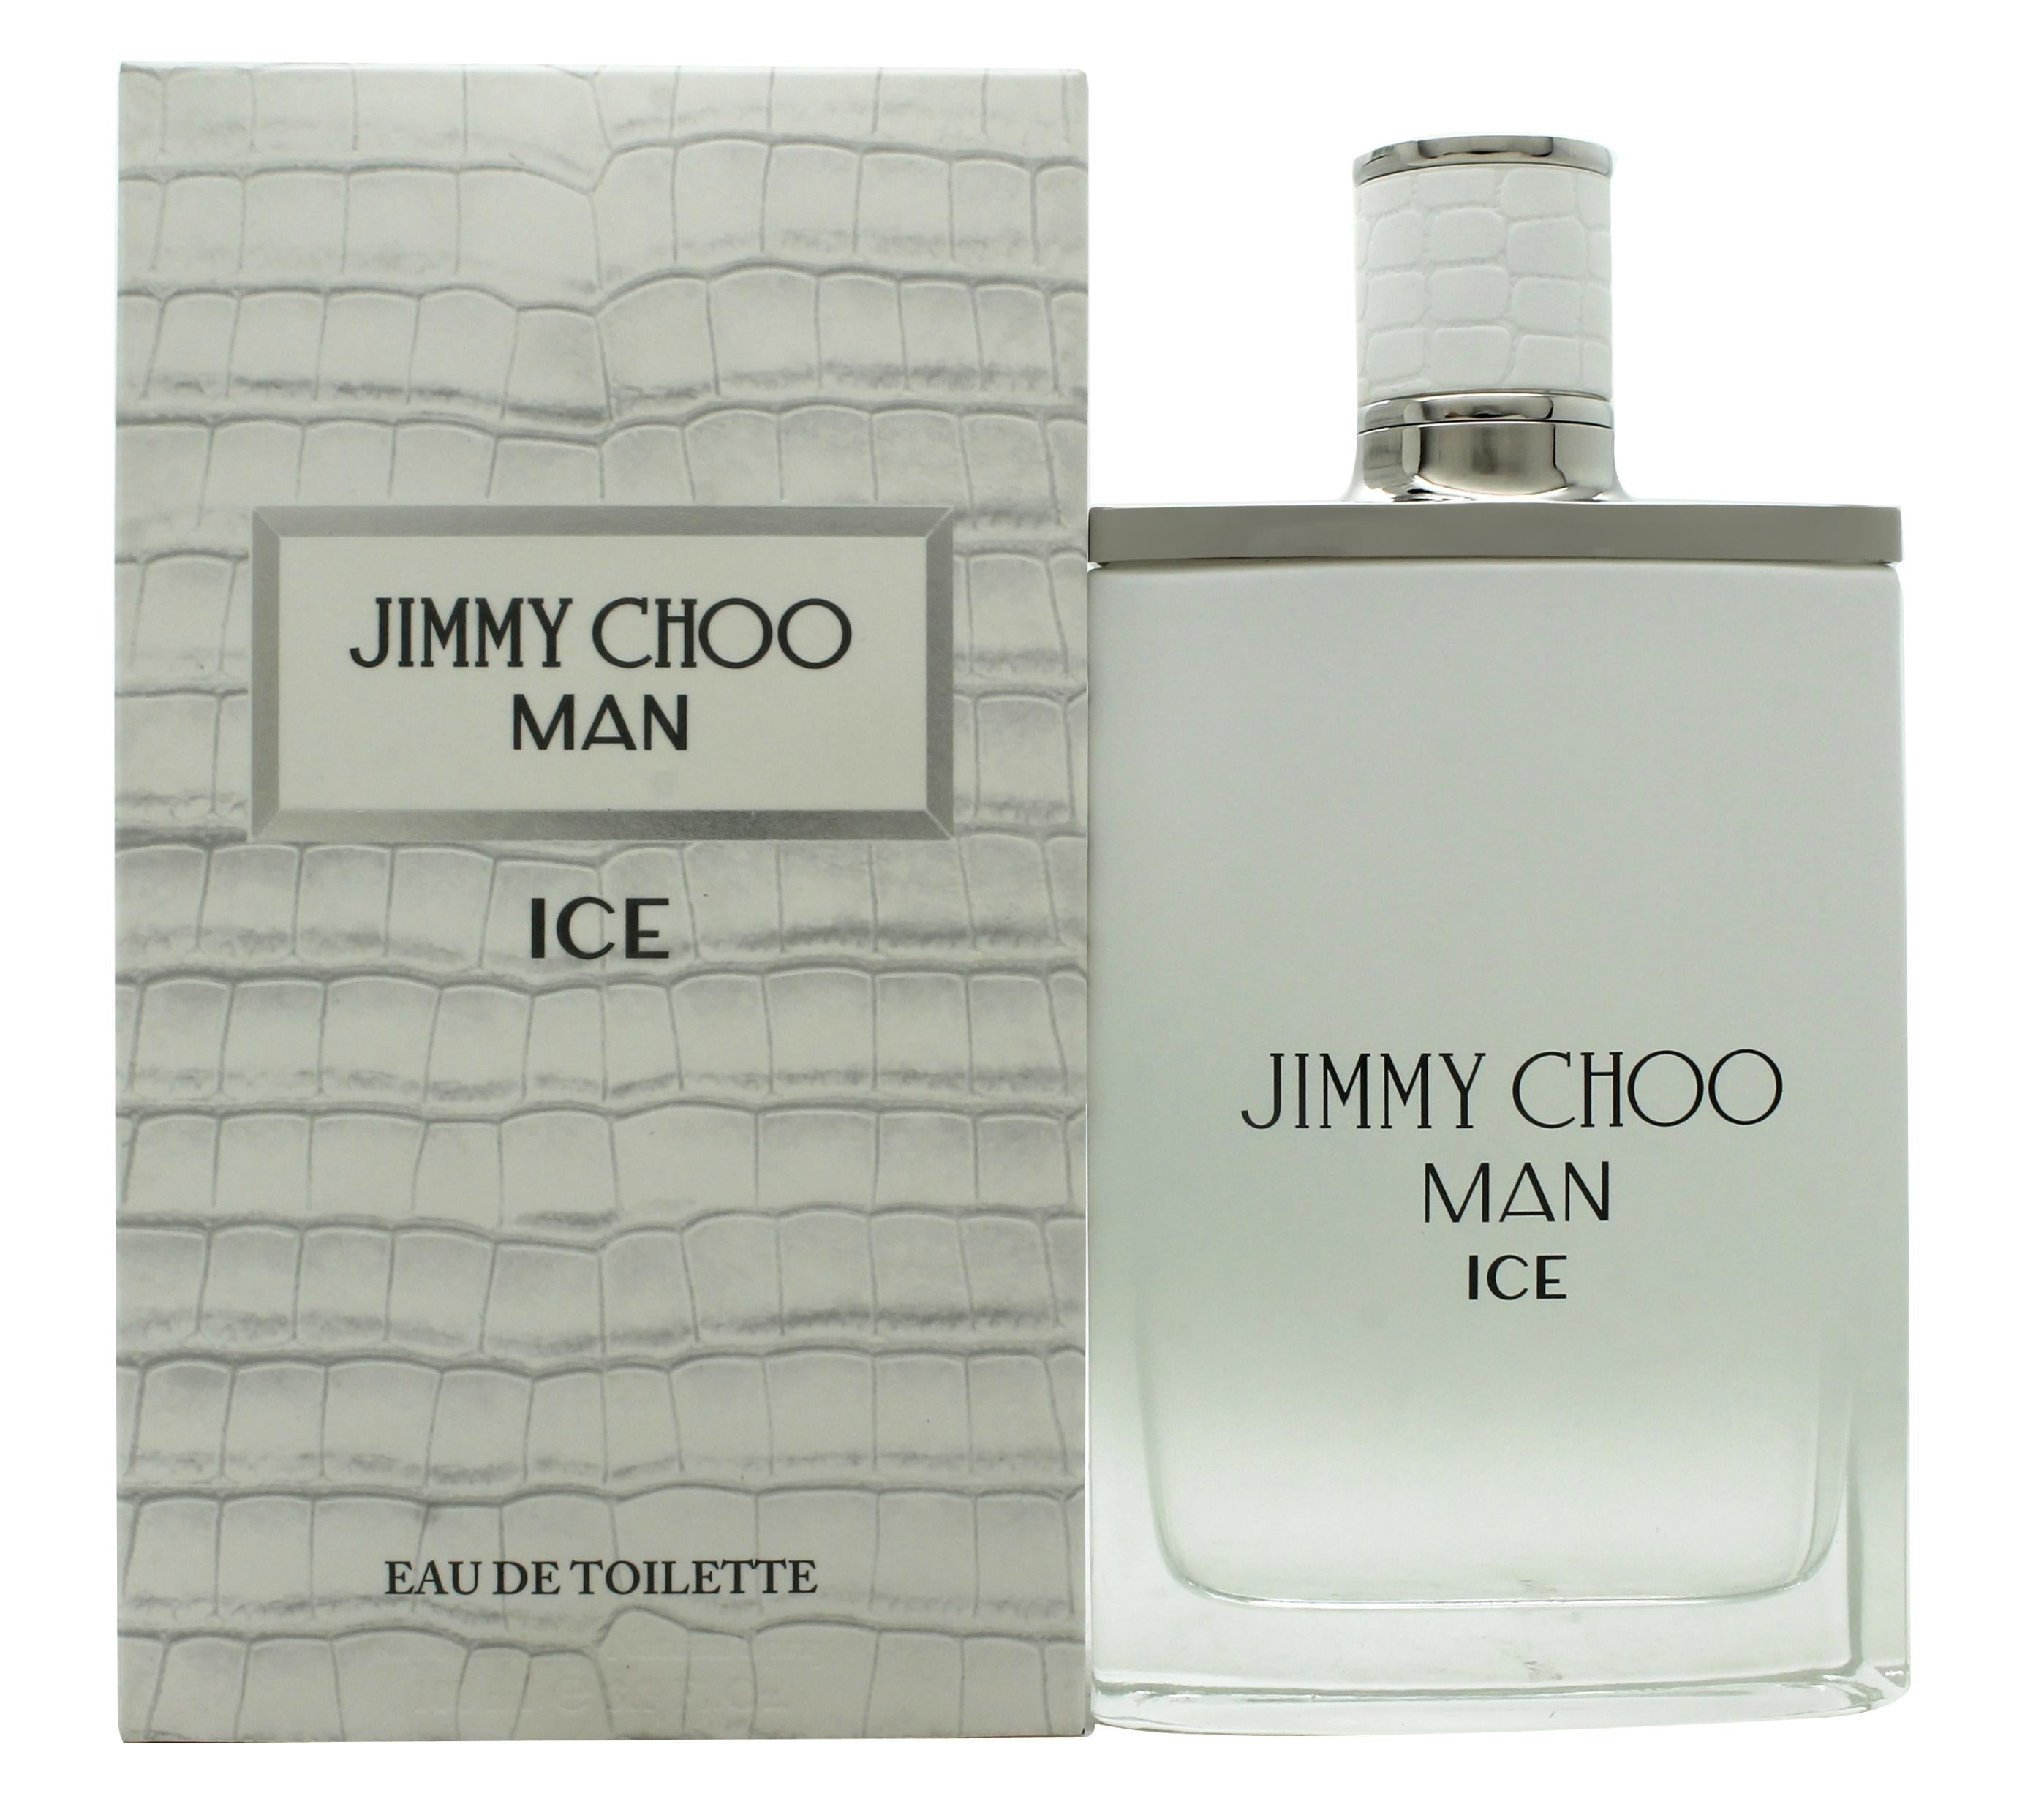 View Jimmy Choo Man Ice Eau de Toilette 100ml Spray information